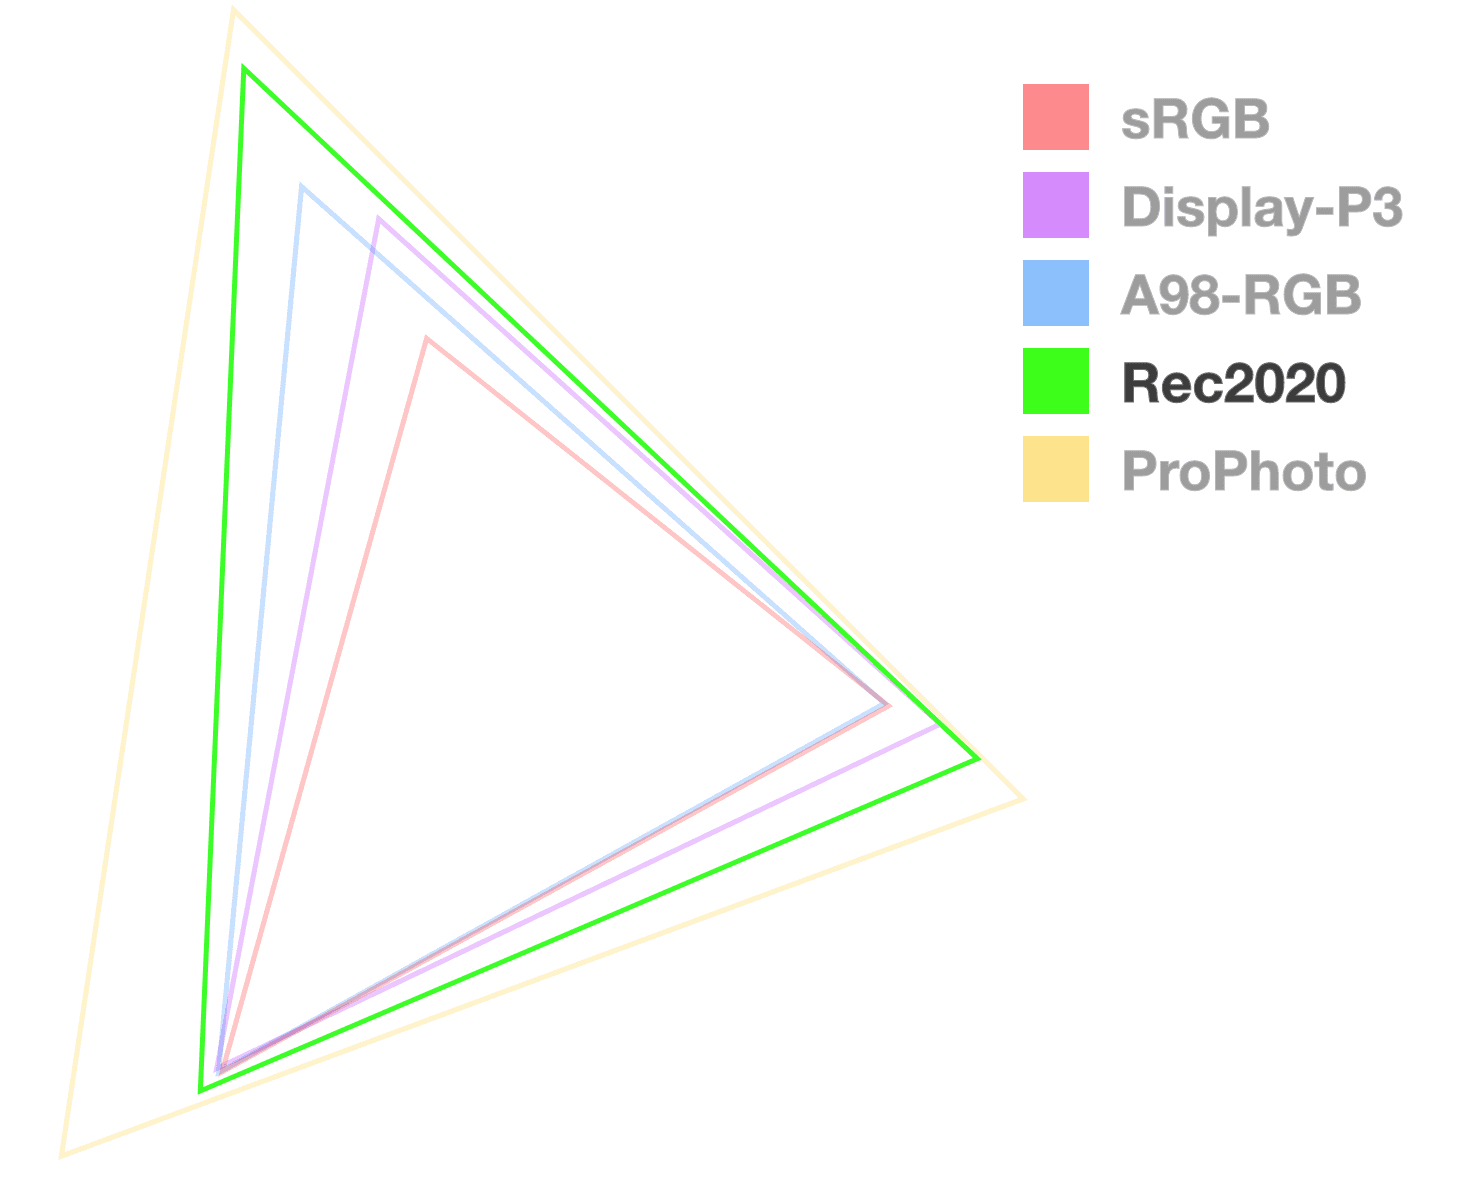 Rec2020 の三角形は、色域のサイズを可視化するために完全に不透明な唯一の三角形です。大きい順から 2 番目に多いようです。